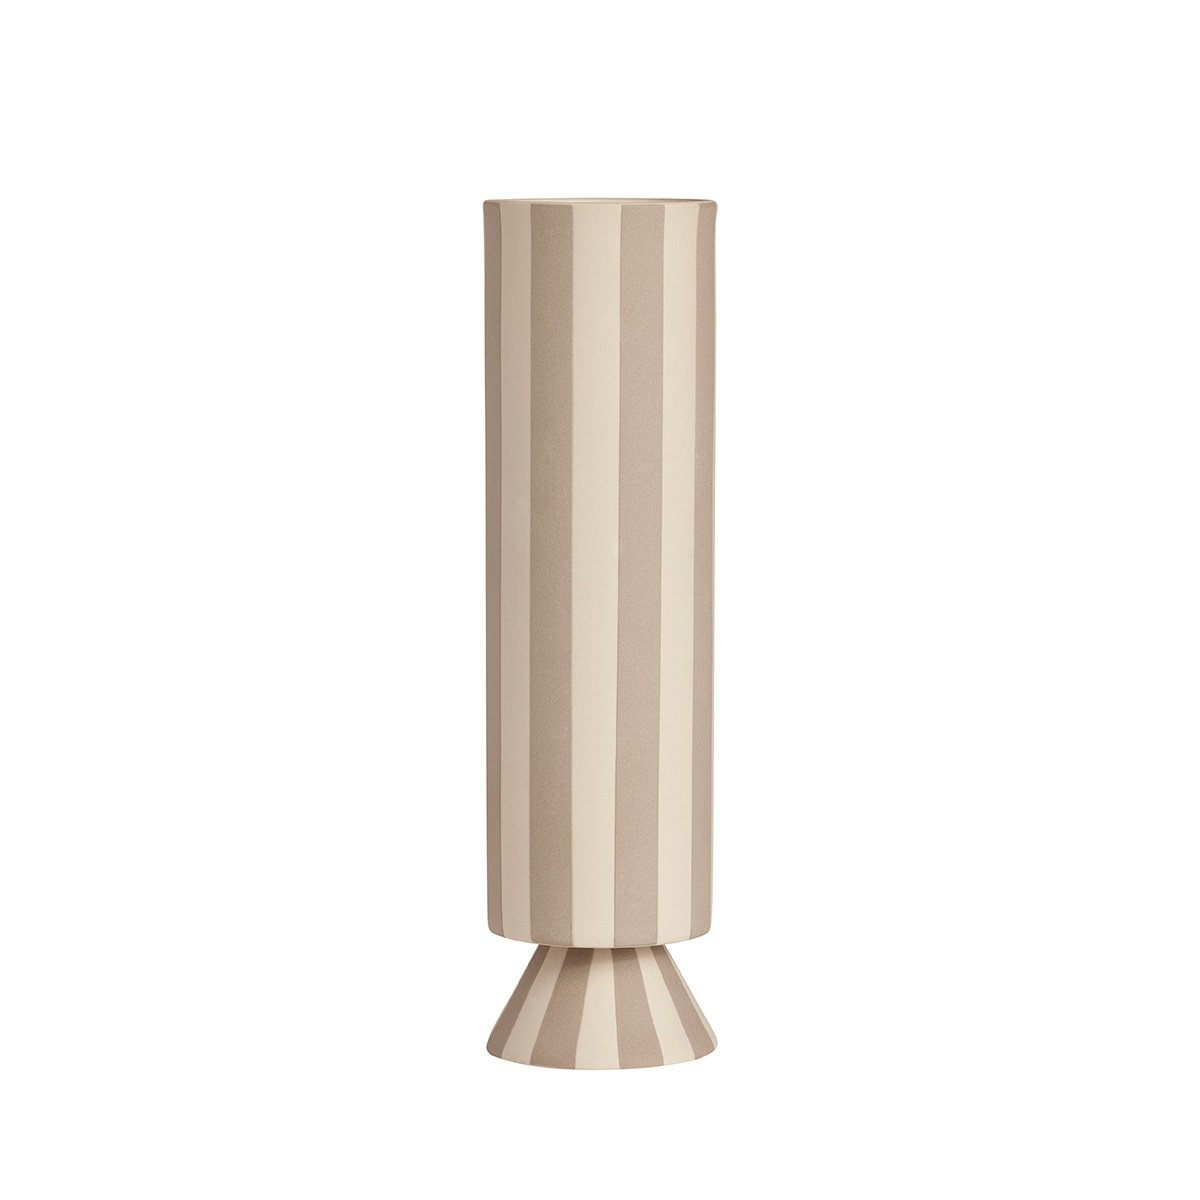 Oyoy Living - Toppu Vase High - Clay (L300678), OYOY Living